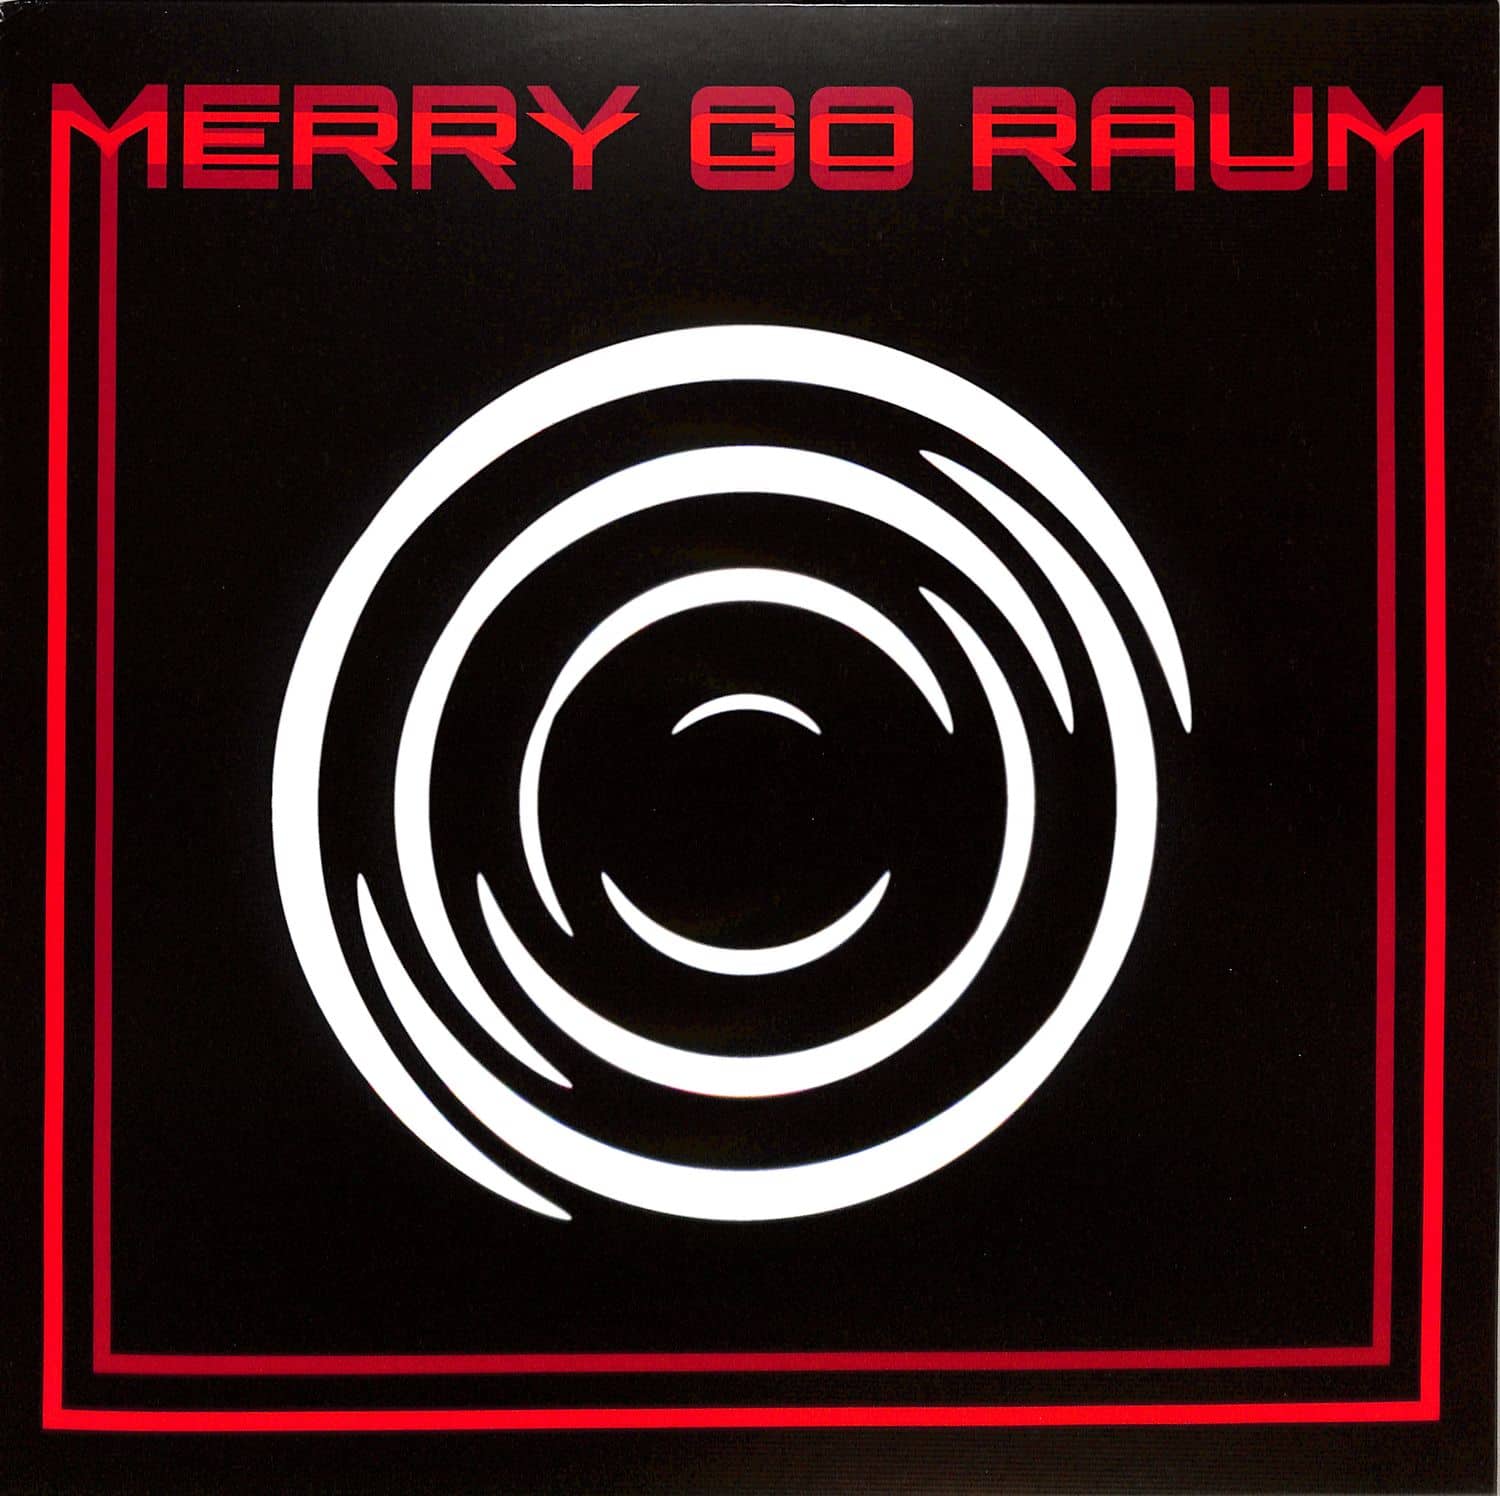 Merry Go Raum - MERRY GO RAUM